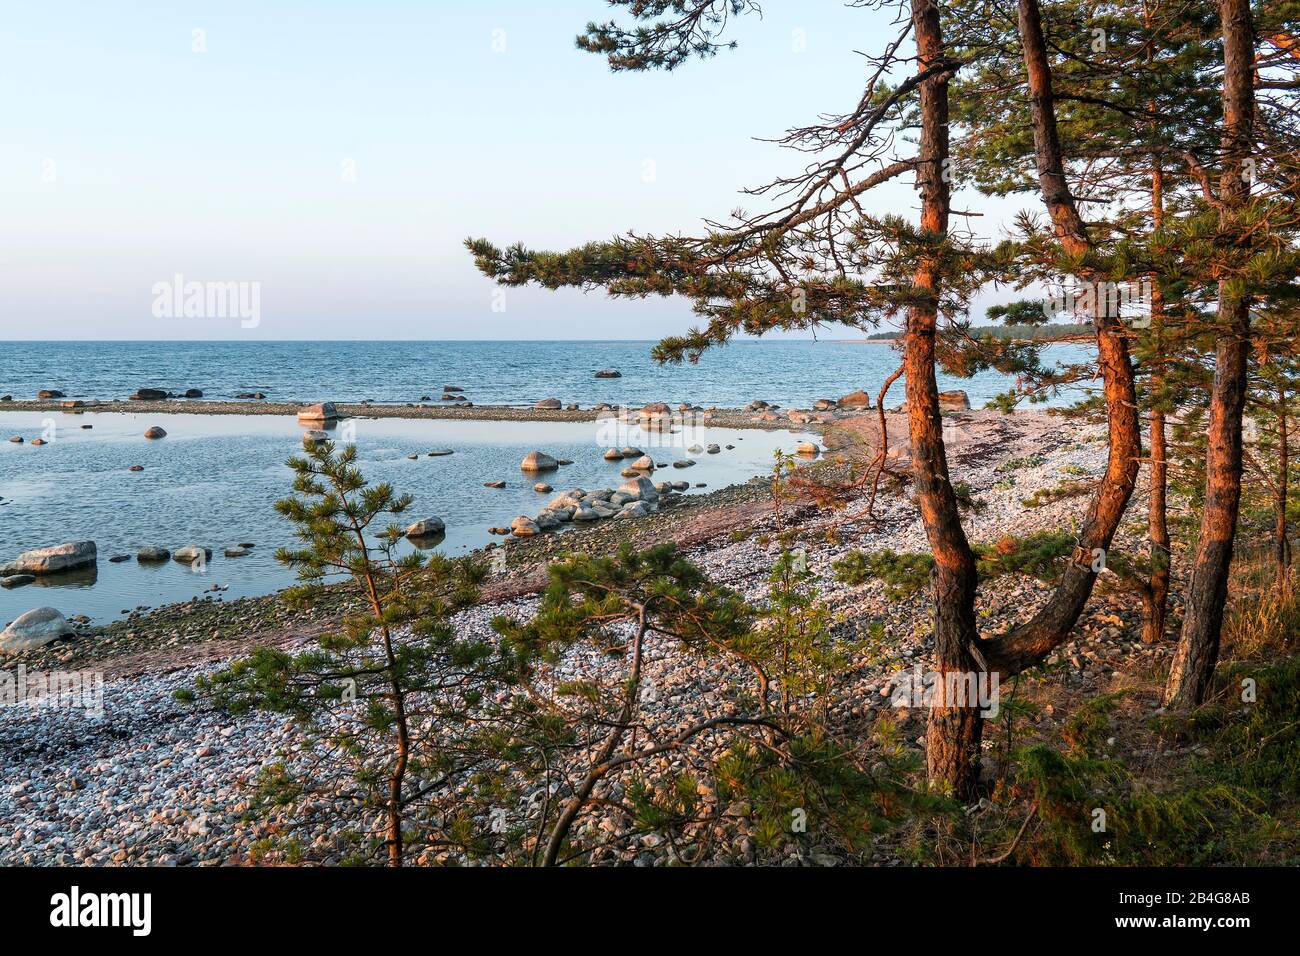 Estland, Ostseeinsel Hiiumaa, Schärenküste, Kiefern Im Abendlicht Banque D'Images